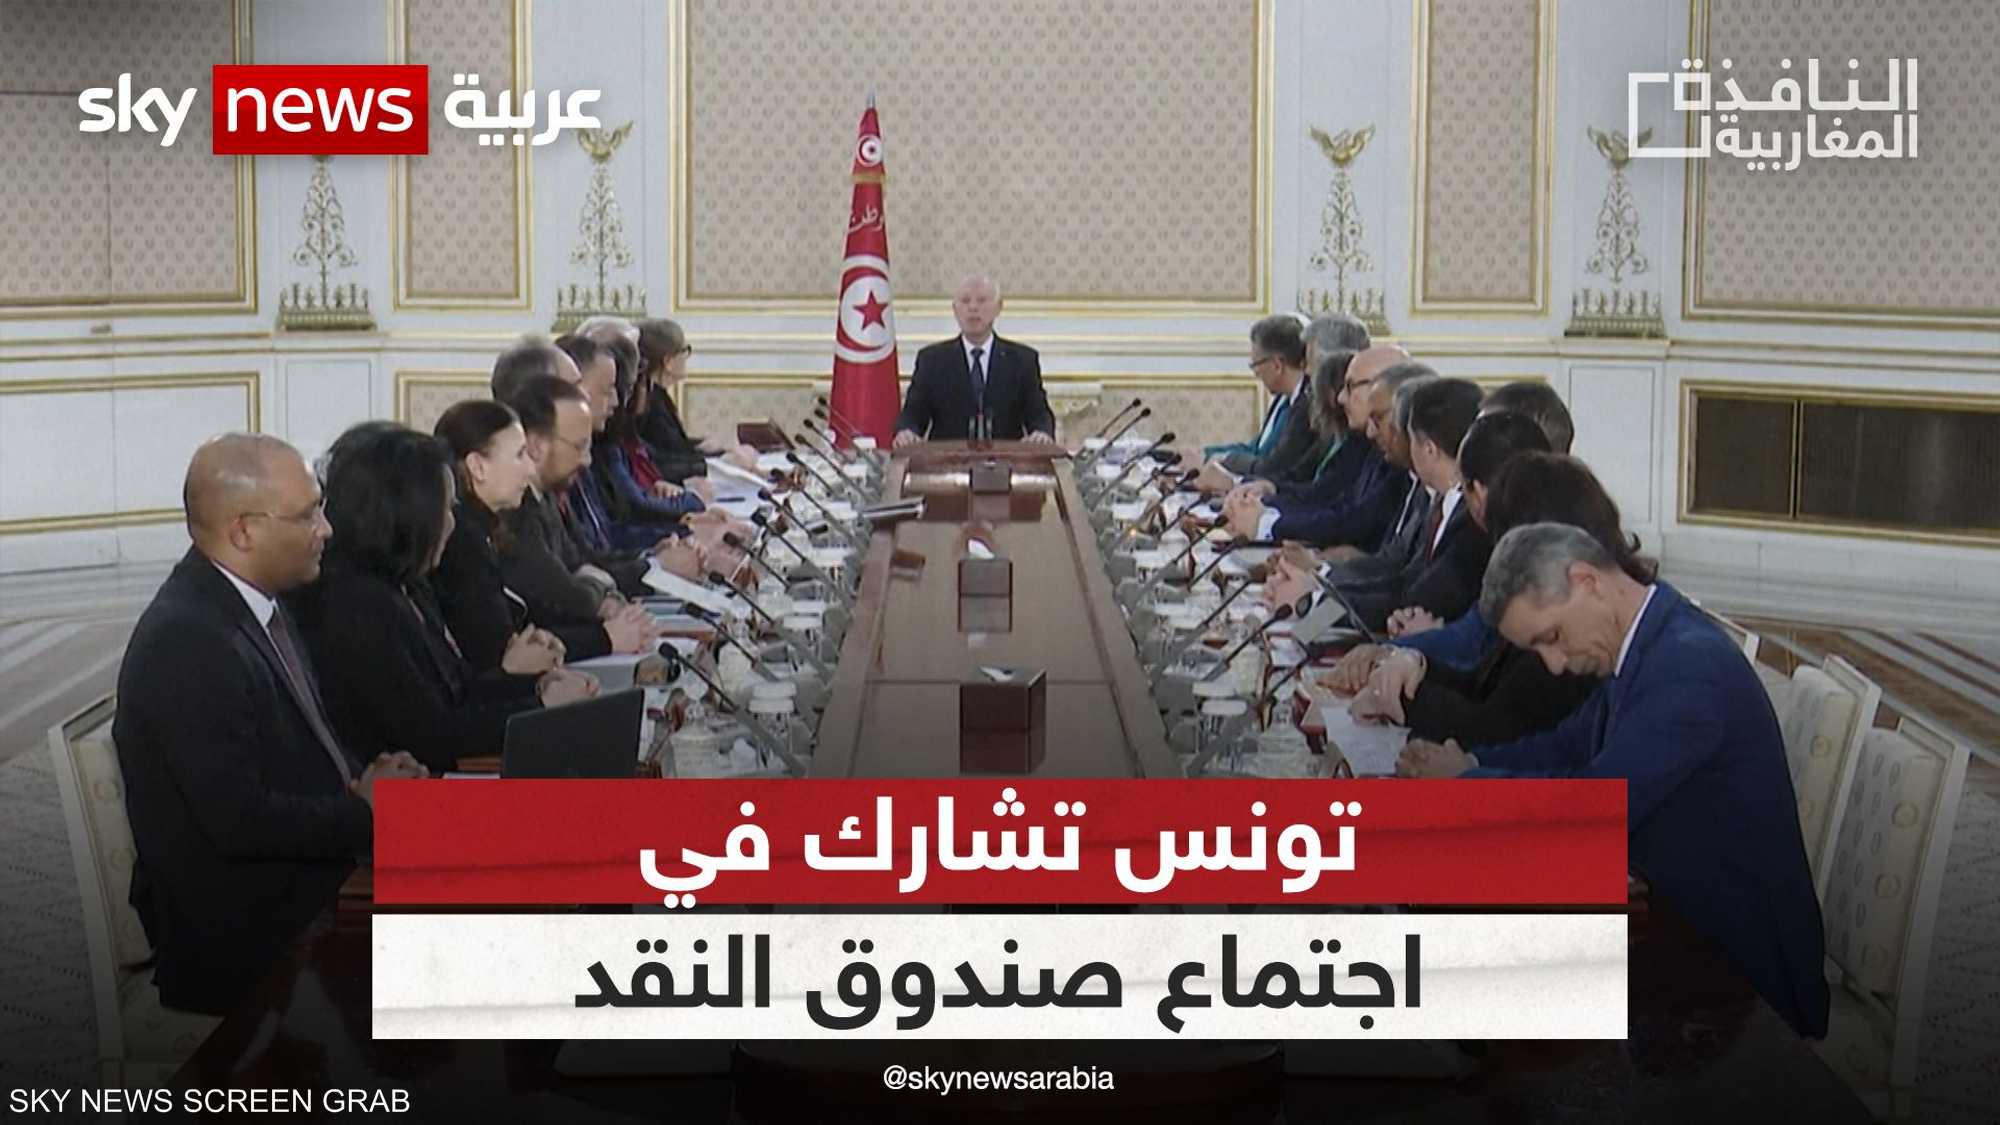 تونس تحضر اجتماعات الربيع لصندوق النقد الدولي